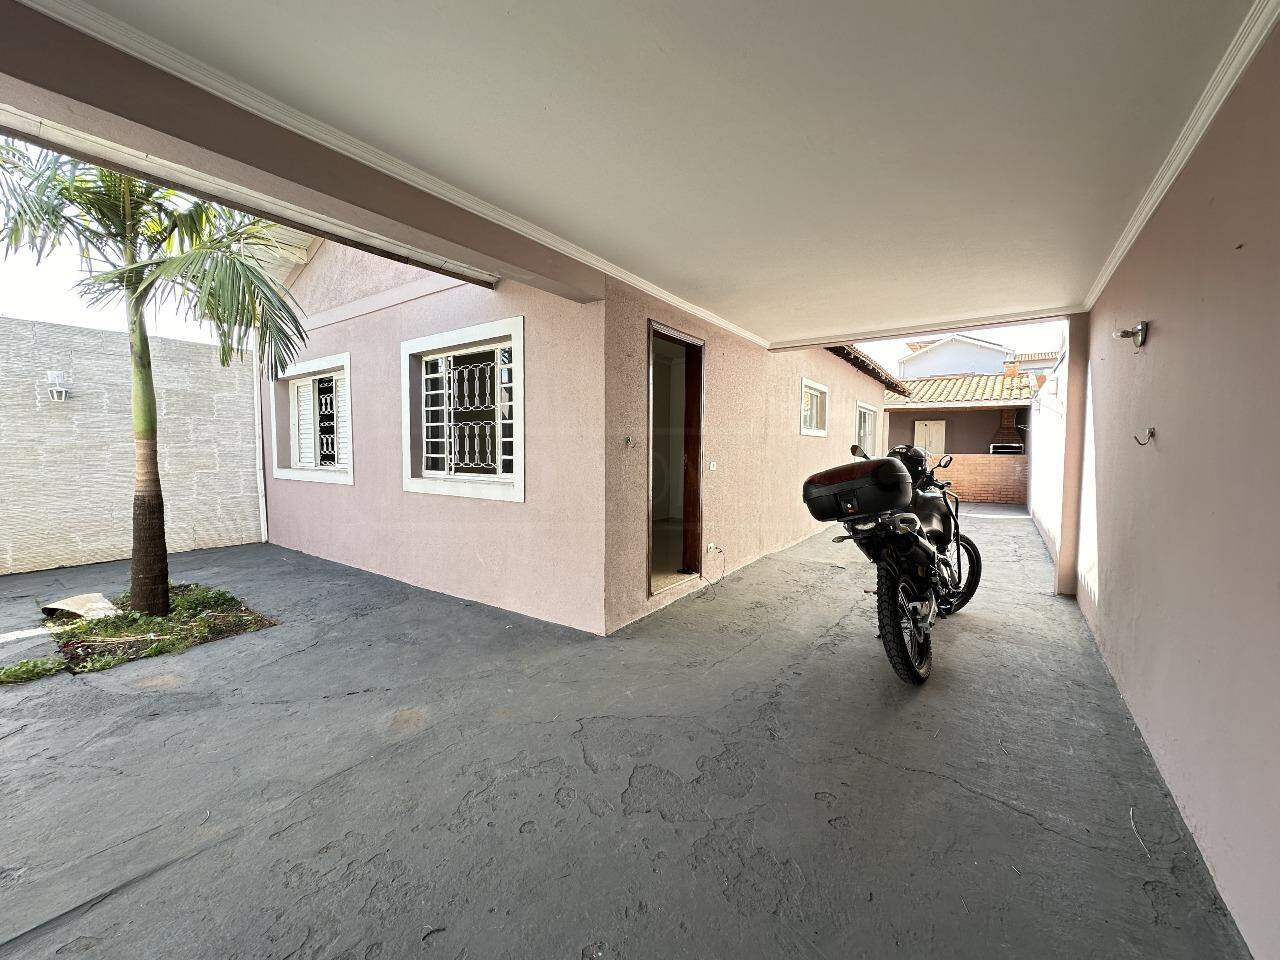 Casa à venda, 3 quartos, sendo 1 suíte, 3 vagas, no bairro Nhô Quim em Piracicaba - SP